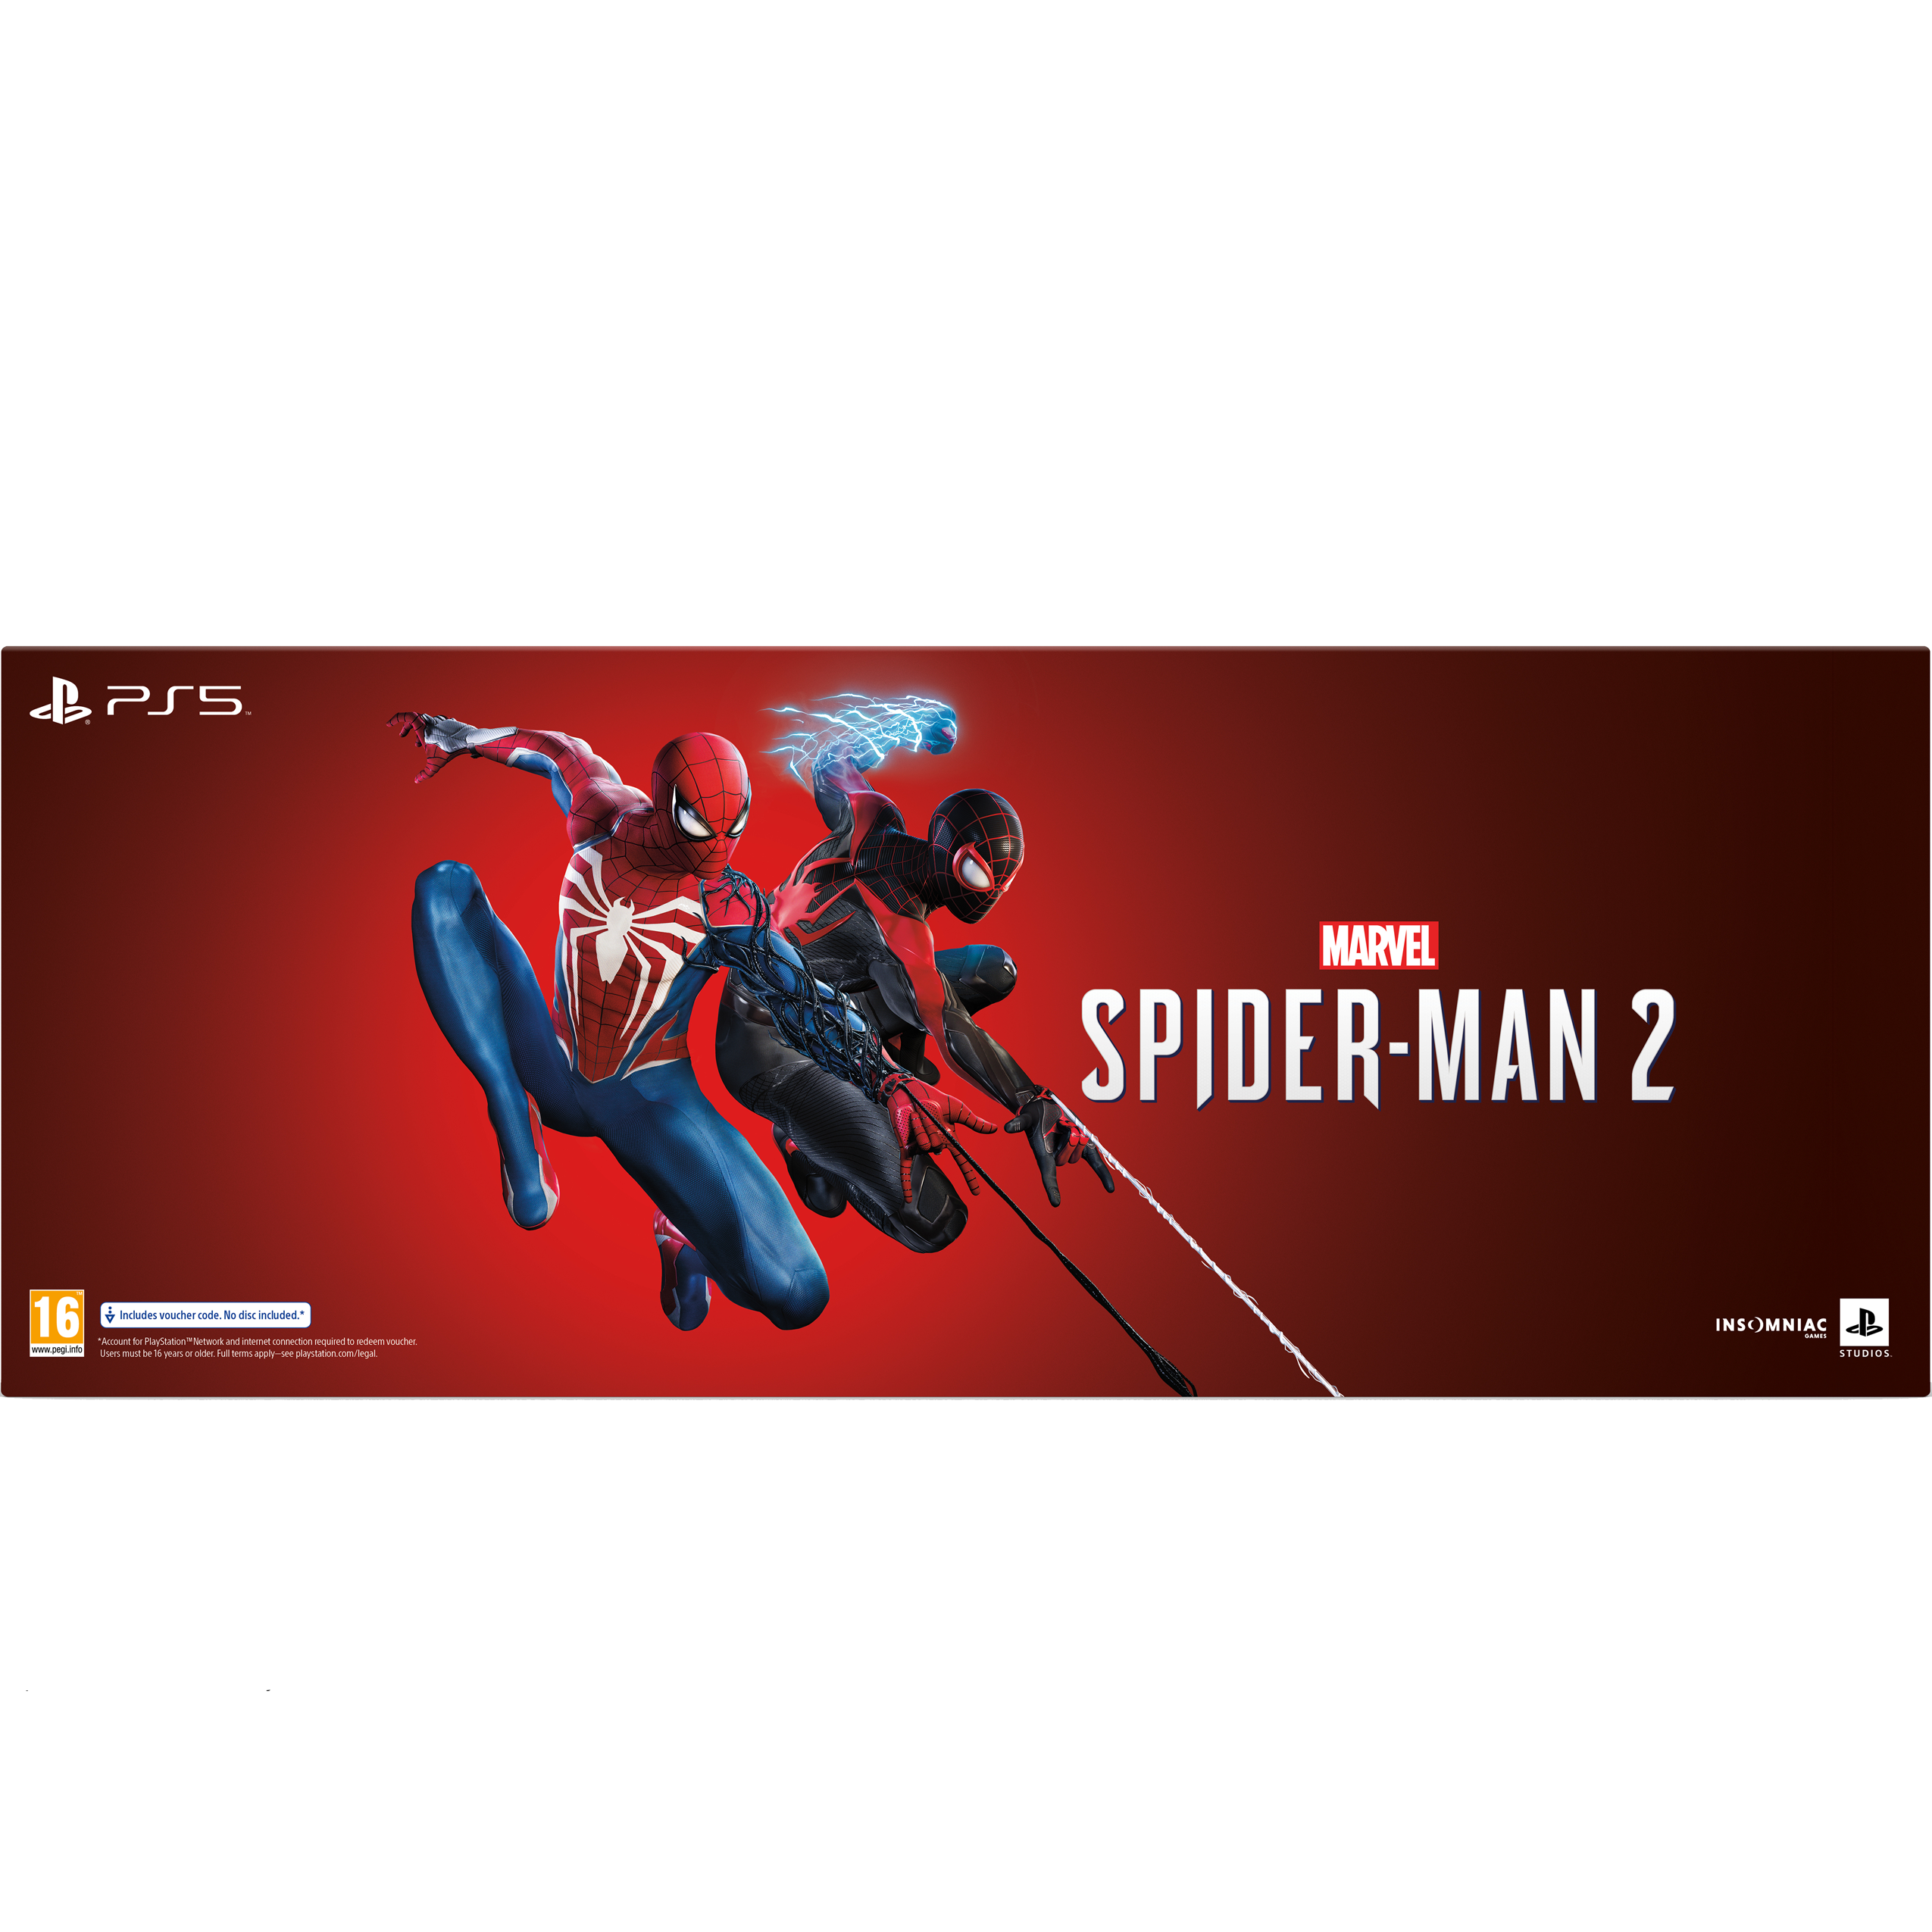 משחק לקונסולה בגרסאת מהדורת אספנים Sony PS5 Marvel's Spider-Man 2 